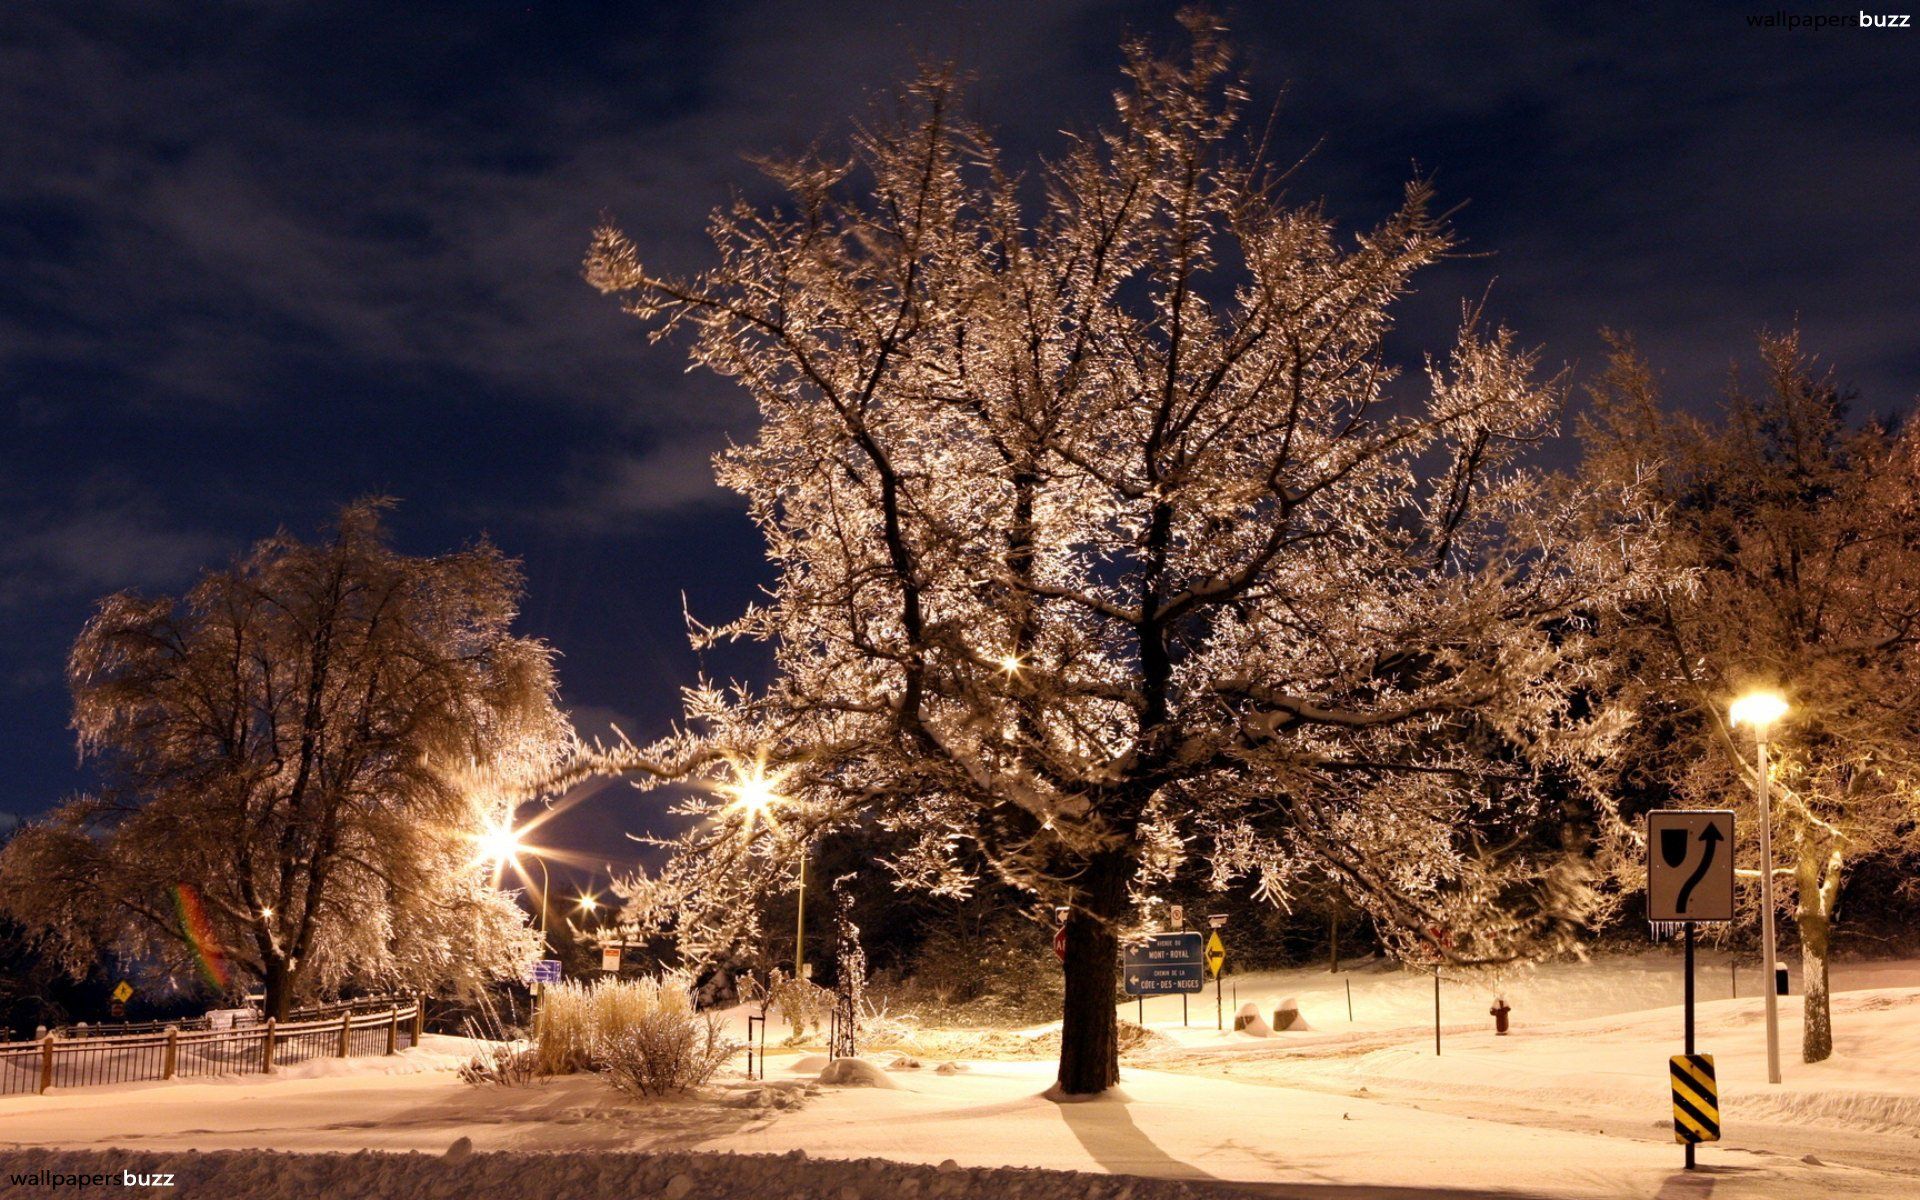 Night Winter HD Desktop Wallpaper. Widescreen wallpaper, Winter scenes, Winter nature